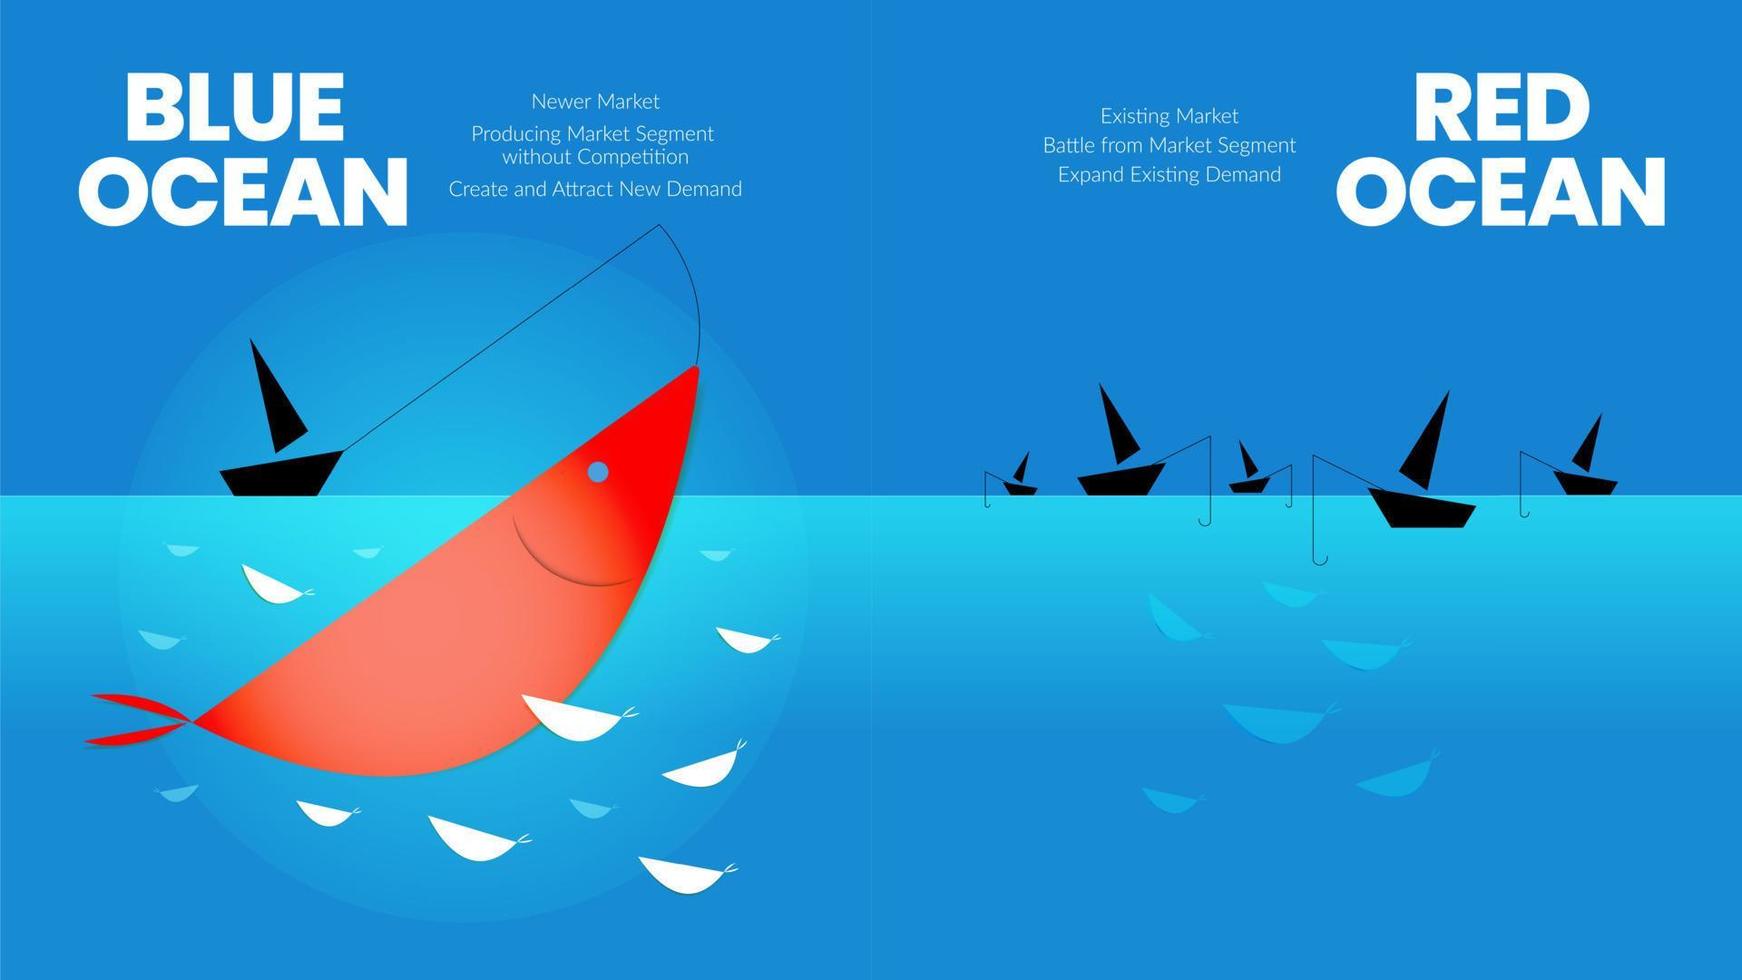 de conceptpresentatie van de blauwe oceaanstrategie is een vector infographic element van nichemarketing. de rode zee heeft bloedige massale concurrentie en de pioniersblauwe kant heeft meer voordelen en kansen